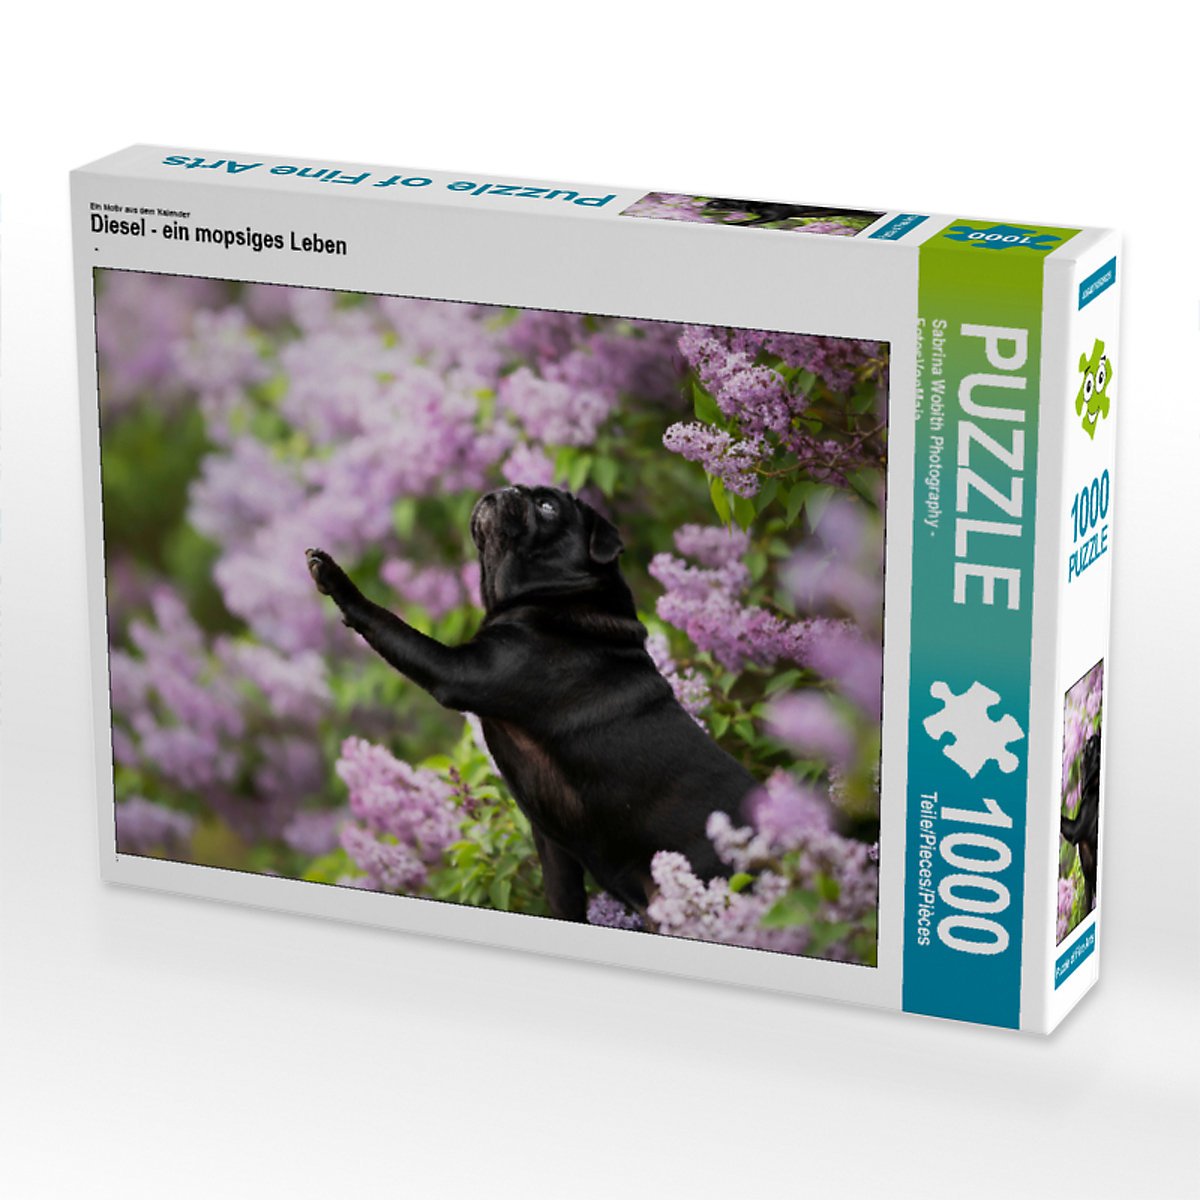 CALVENDO® Puzzle CALVENDO Puzzle Diesel ein mopsiges Leben 1000 Teile Foto-Puzzle für glückliche Stunden